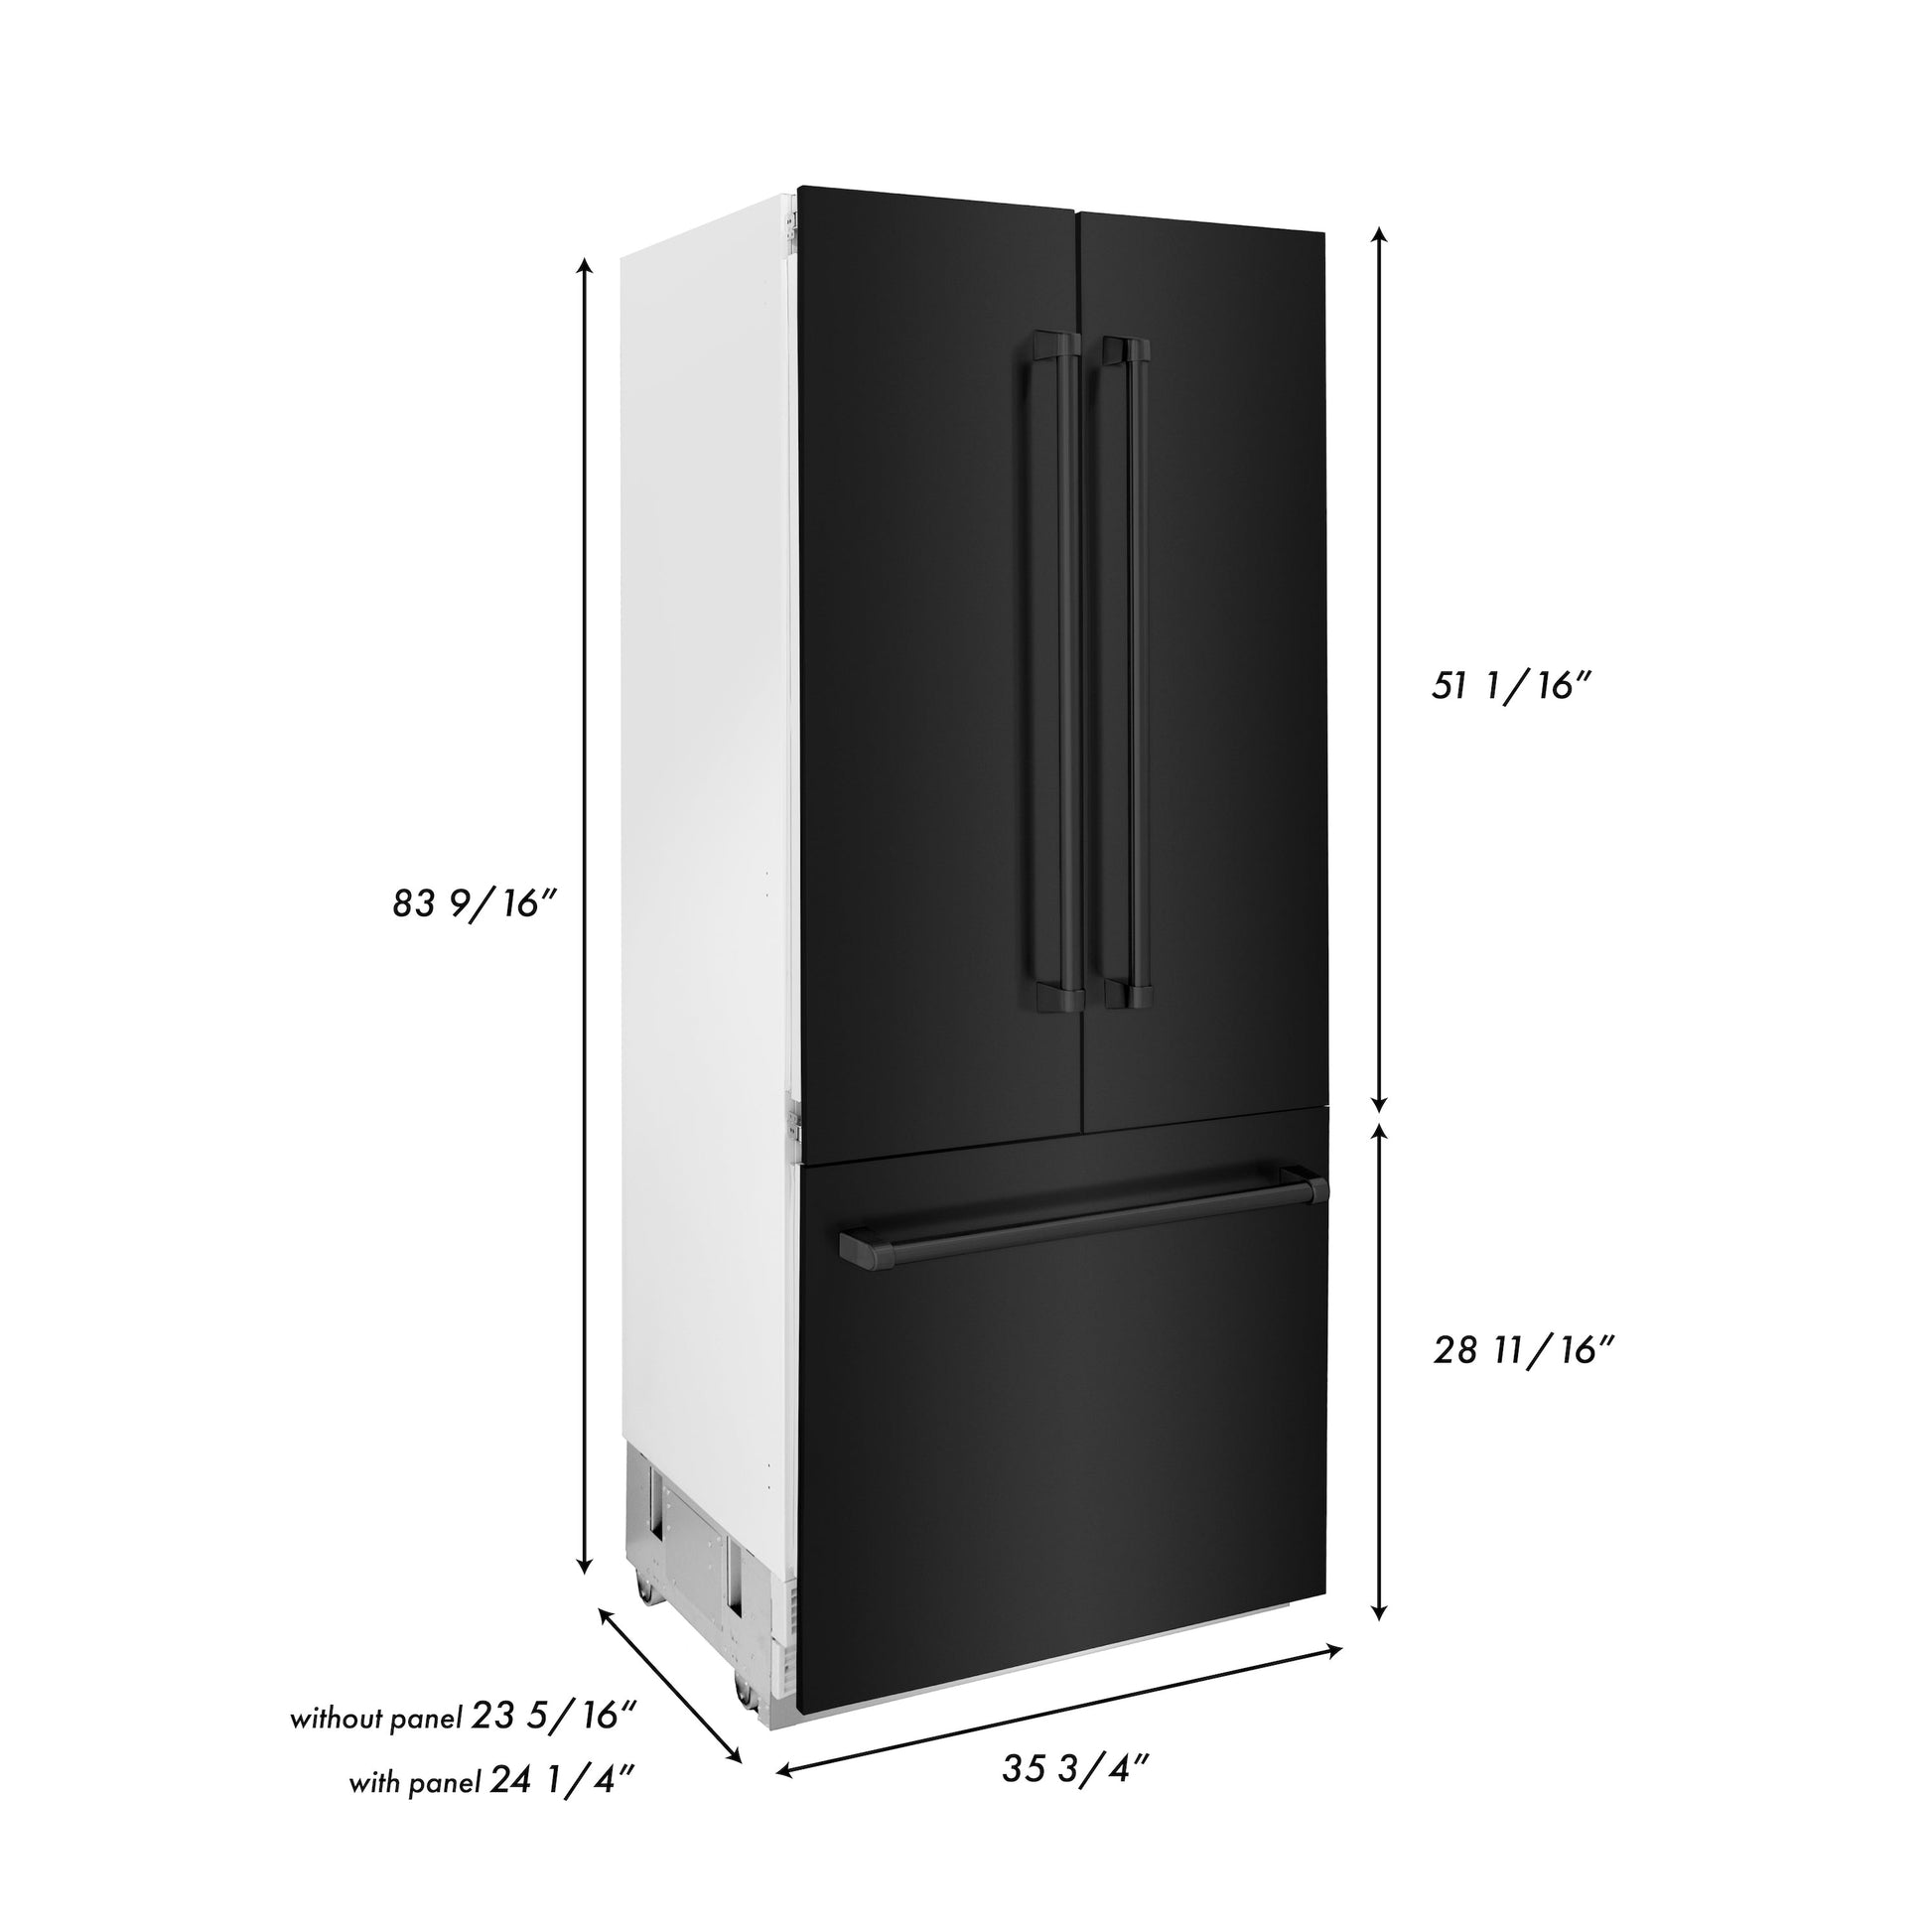 ZLINE 36" Built-In 3-Door French Door Refrigerator with Internal Water and Ice Dispenser - Black Stainless Steel